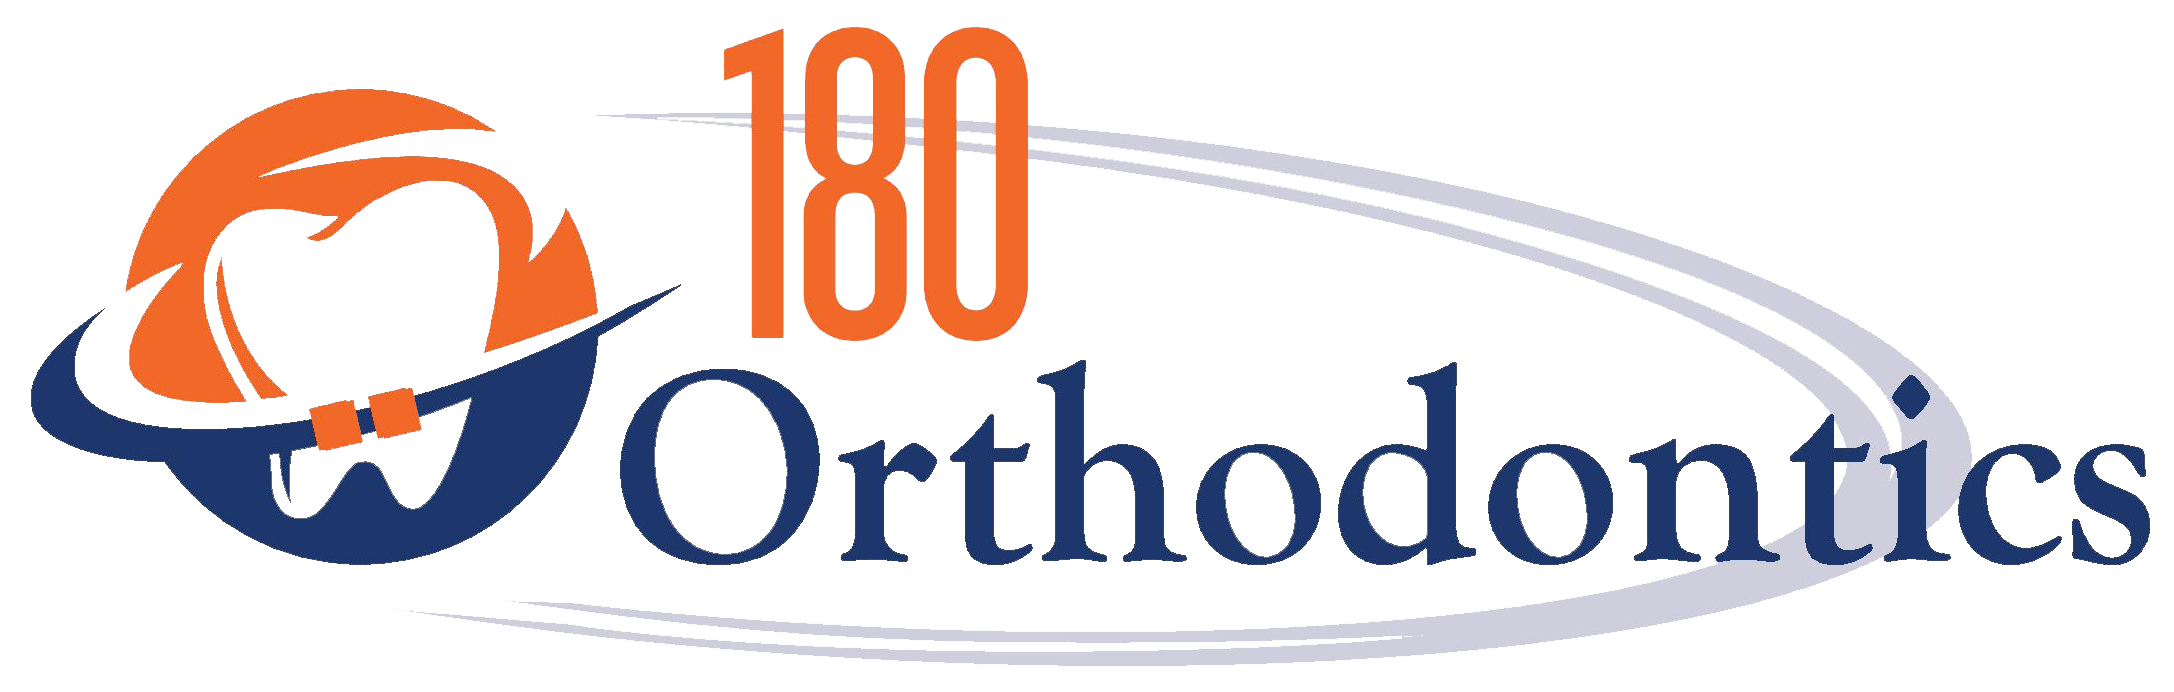 180 Orthodontics